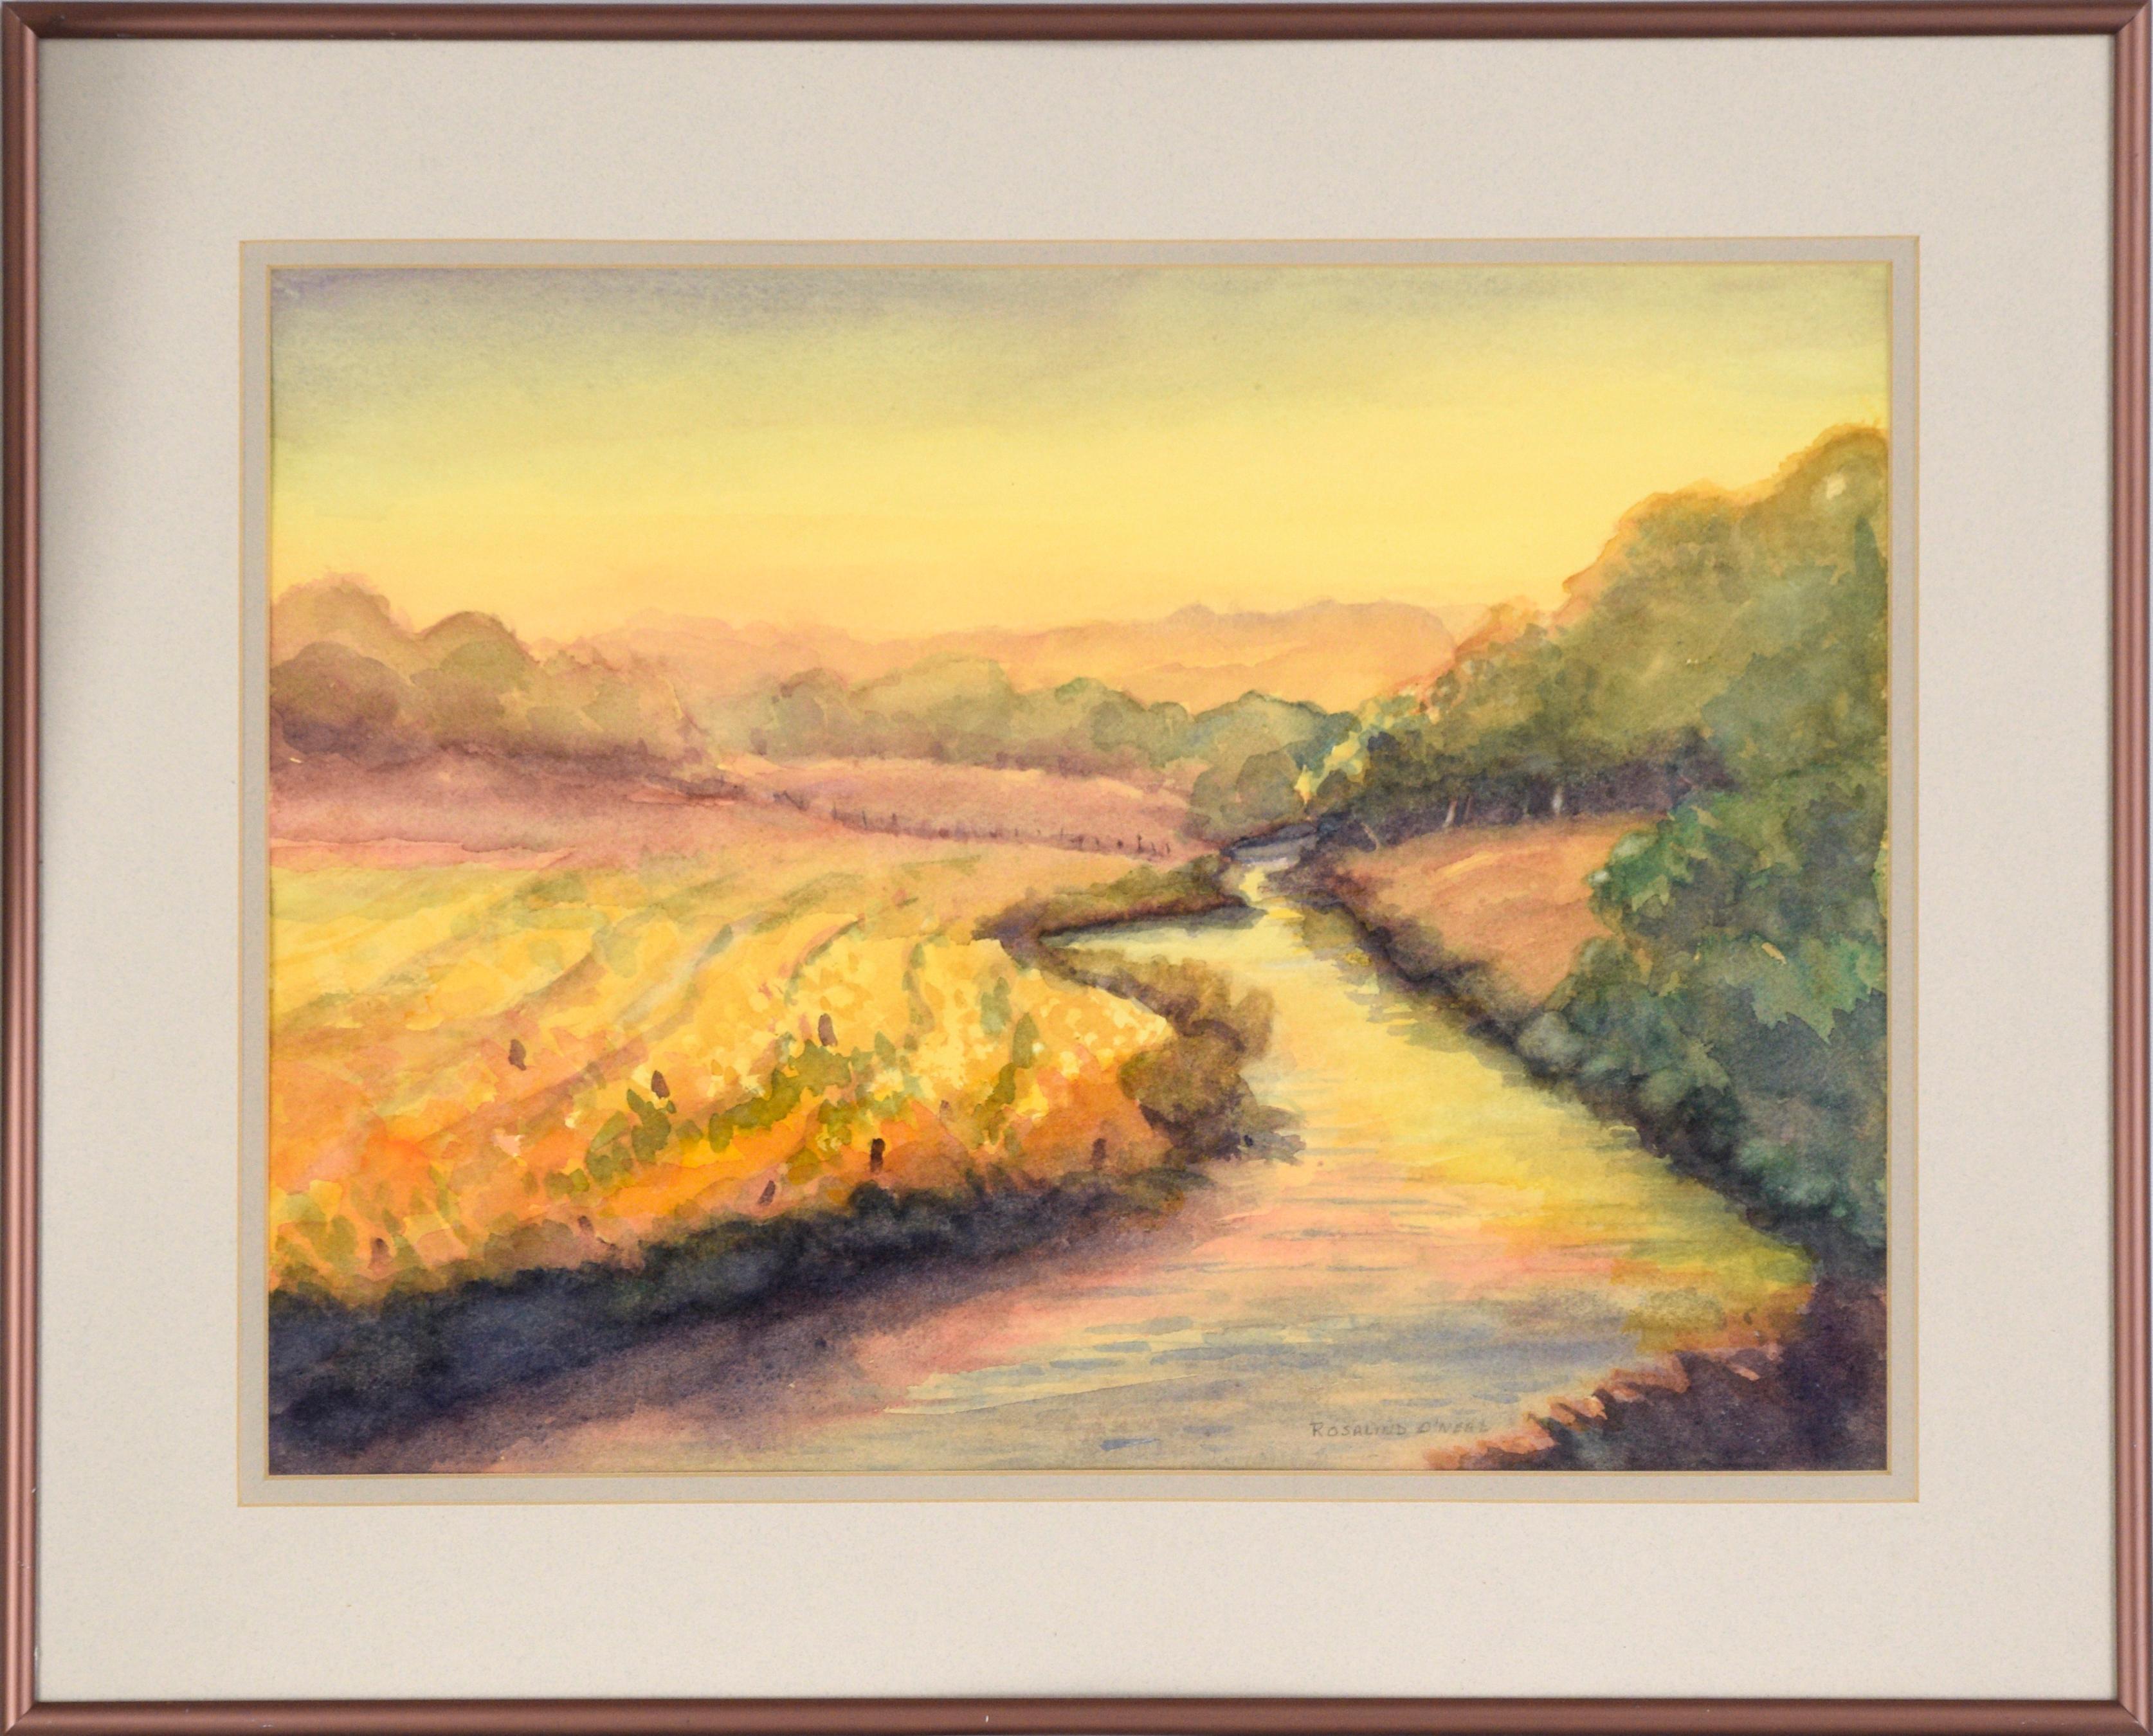 Landscape Art Rosalind O'Neal - Golden Hour at the River (Gold Hour at the River) - paysage à l'aquarelle sur papier